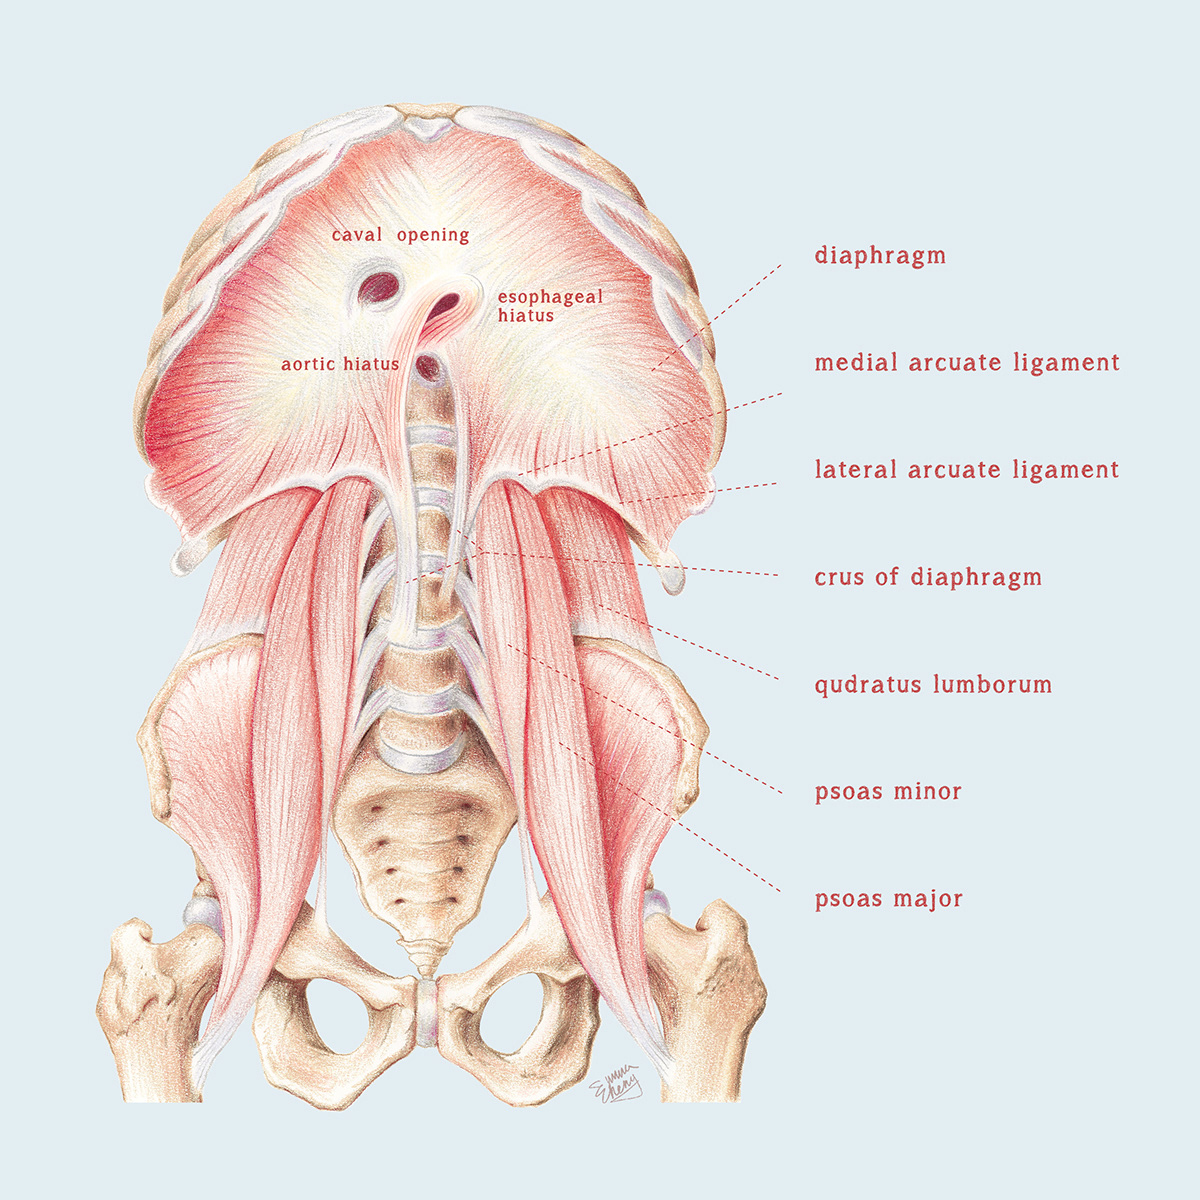 anatomy medicalillustration Nerve wrist diaphragm Disease medicine muscle spine vertebrae